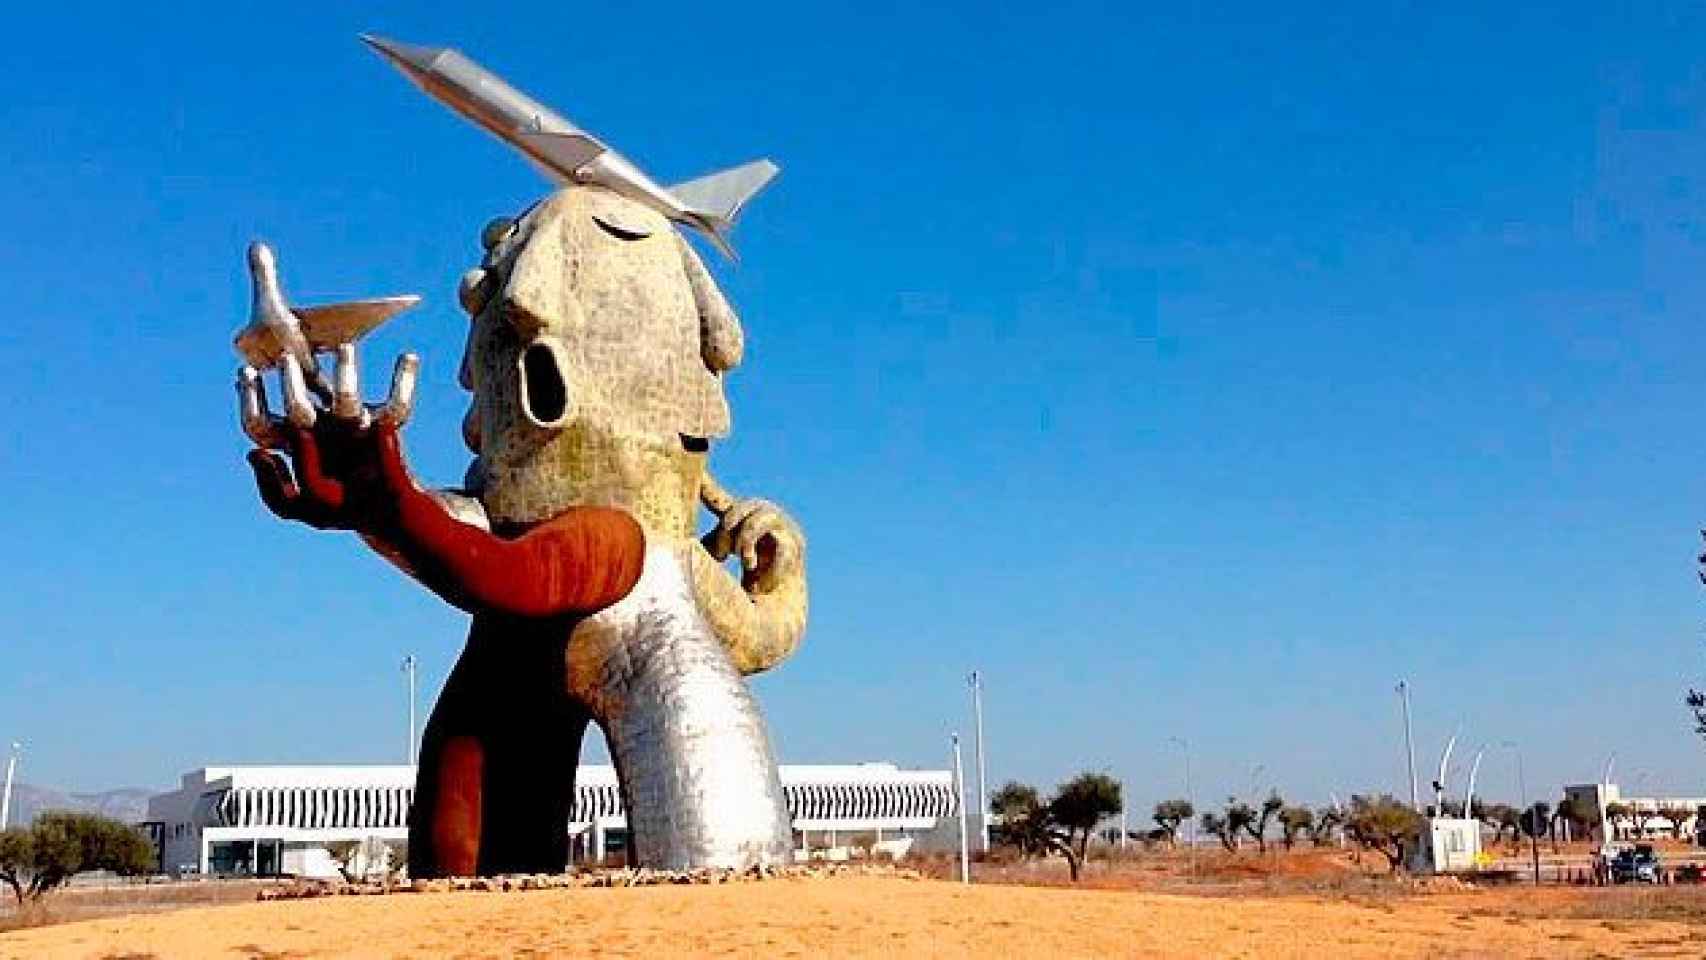 La estatua diseñada por el artista Juan Ripollés, situada en el Aeropuerto de Castellón / CG